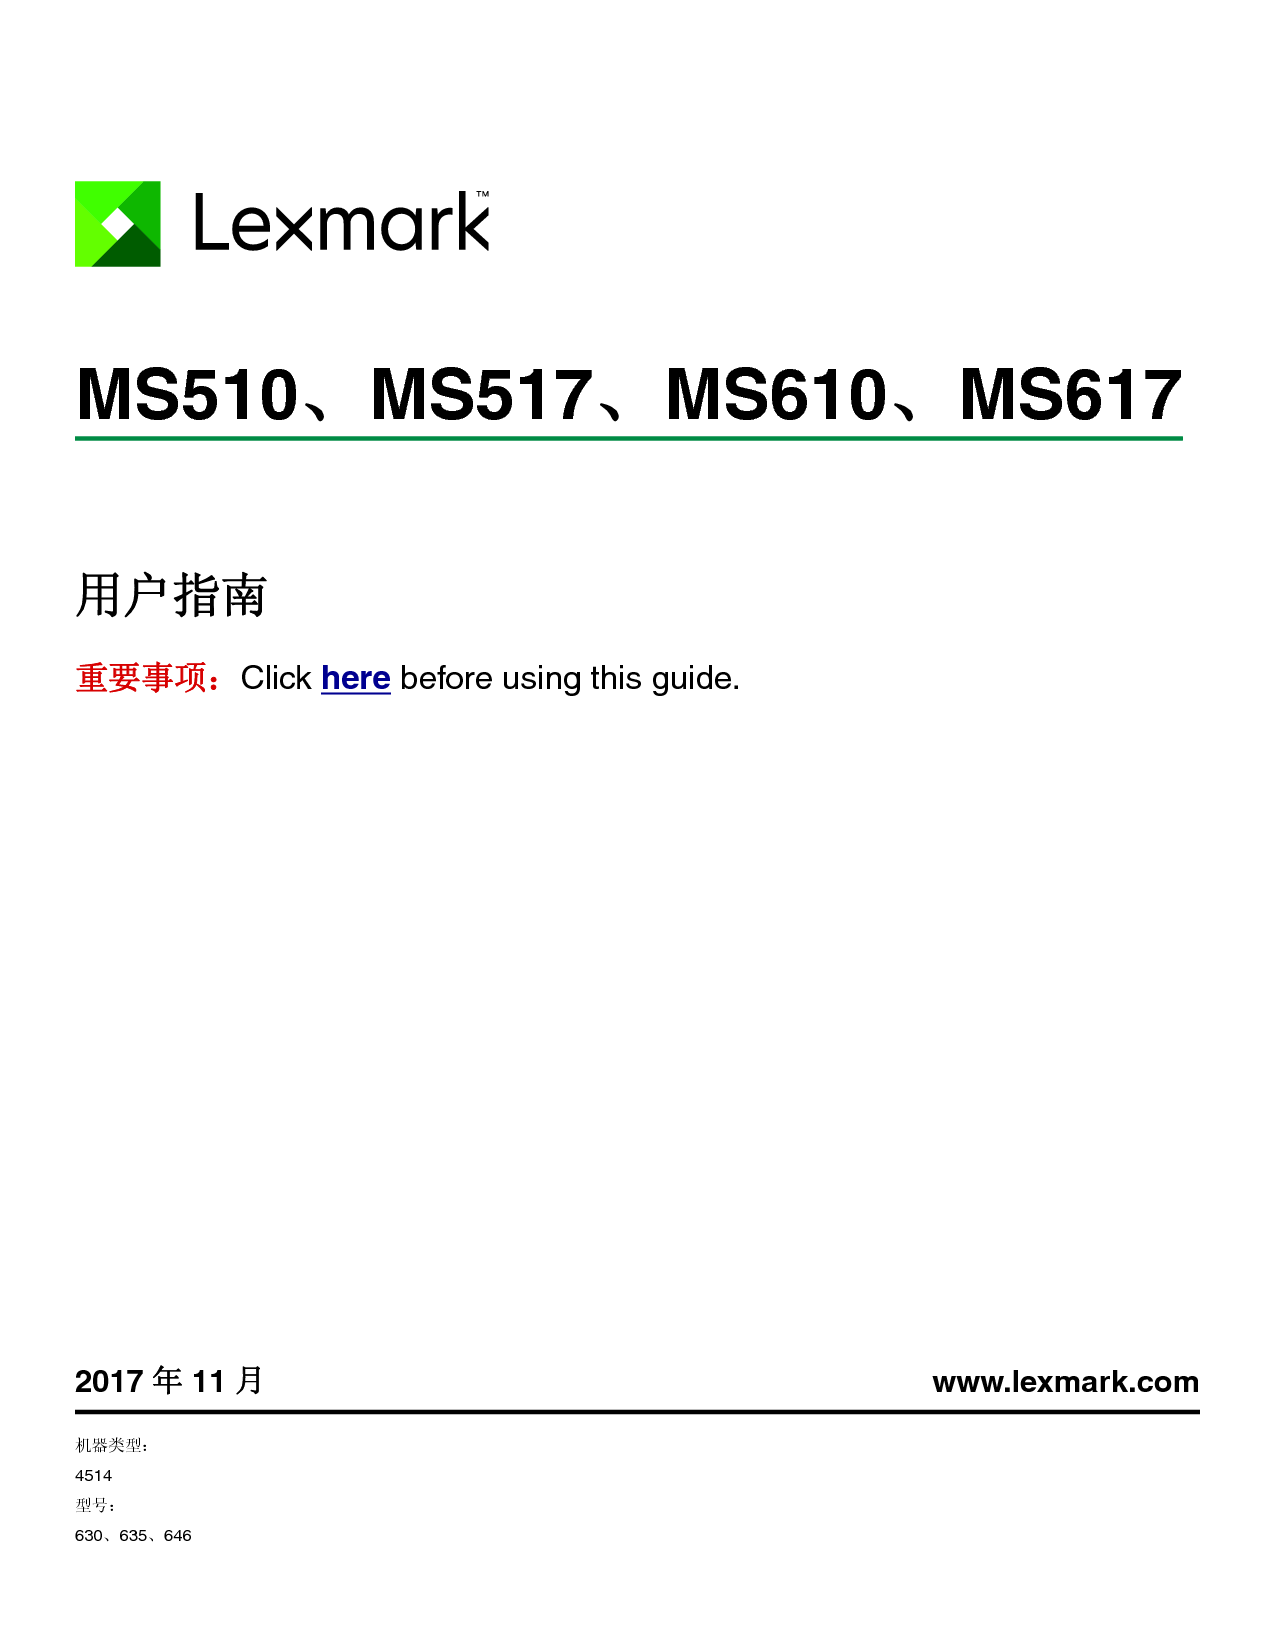 利盟 Lexmark MS510, MS617 用户指南 封面